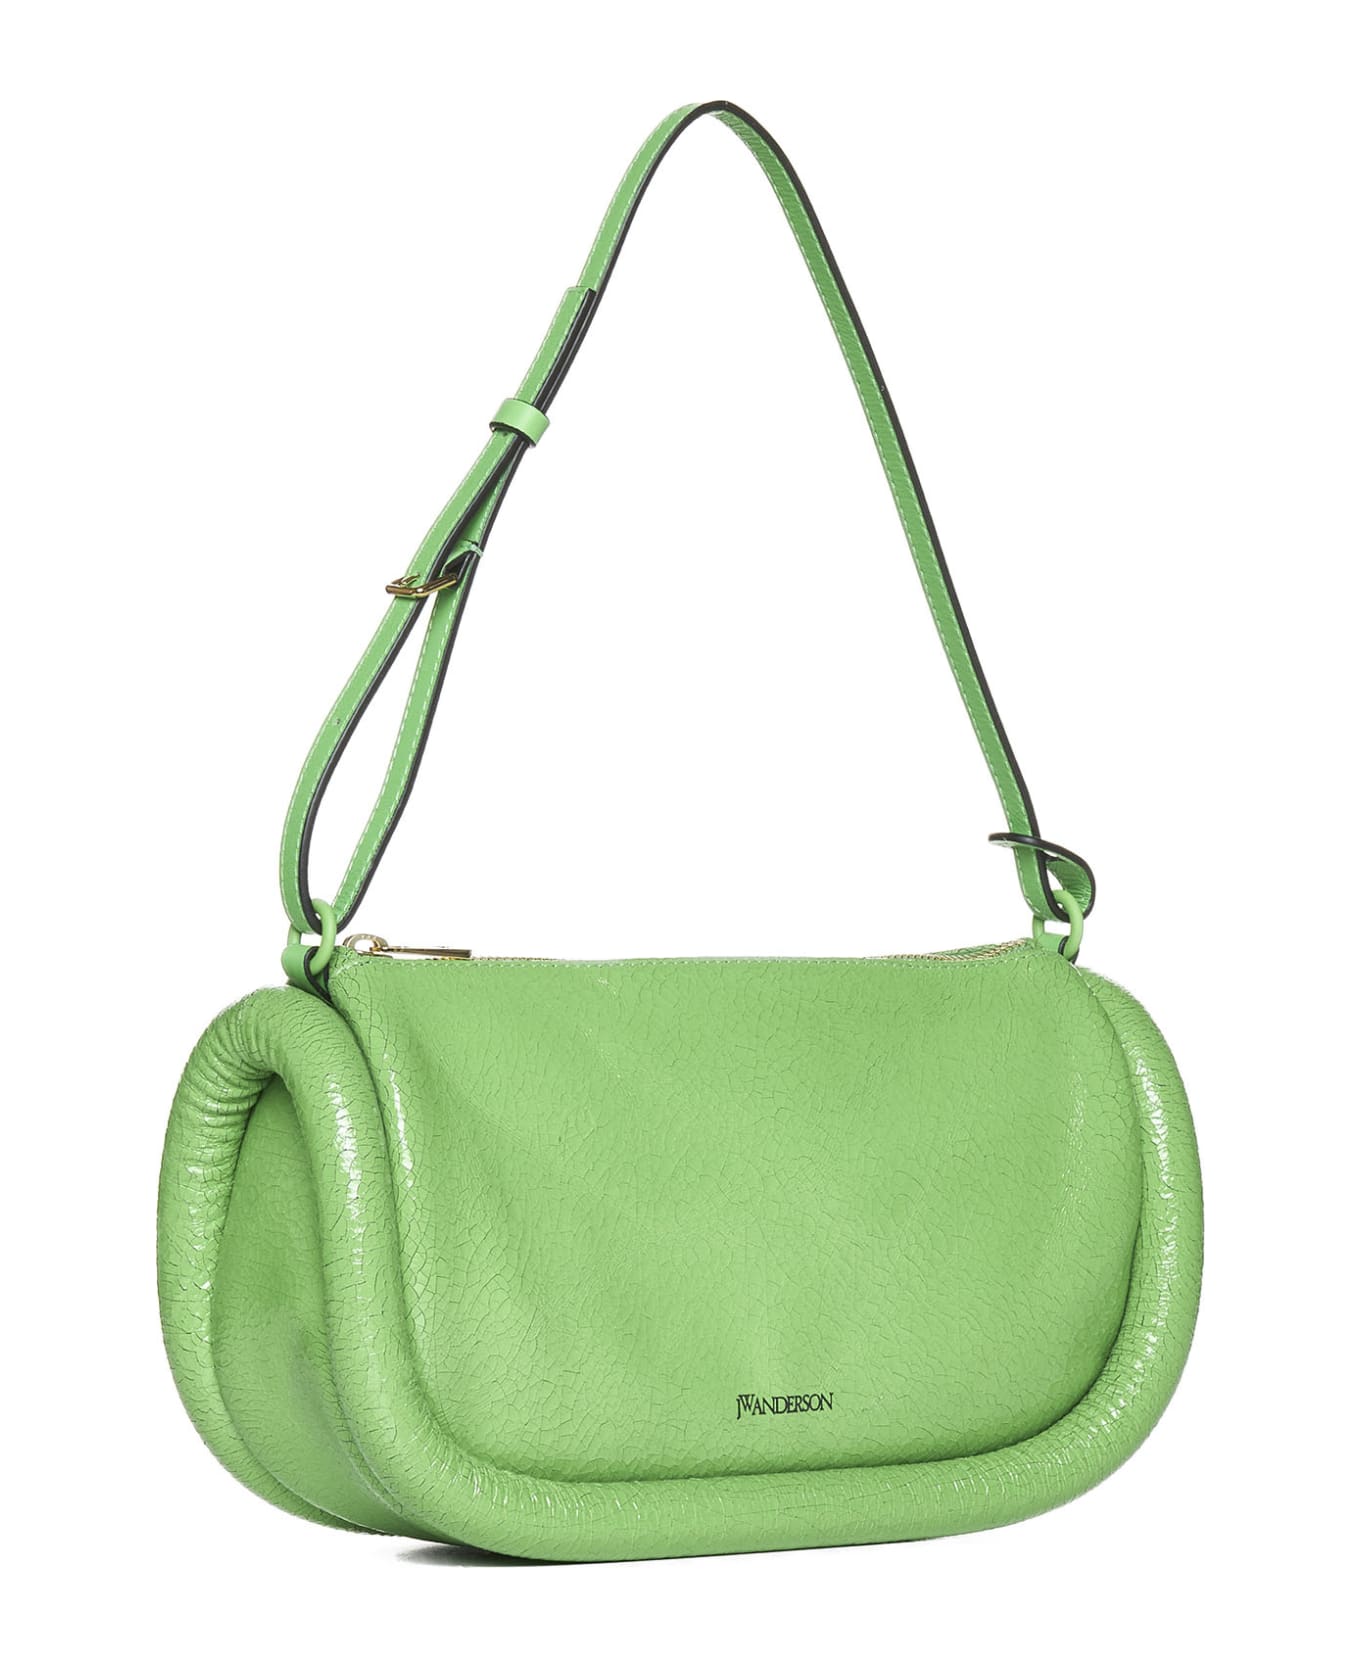 J.W. Anderson Shoulder Bag - Neon green